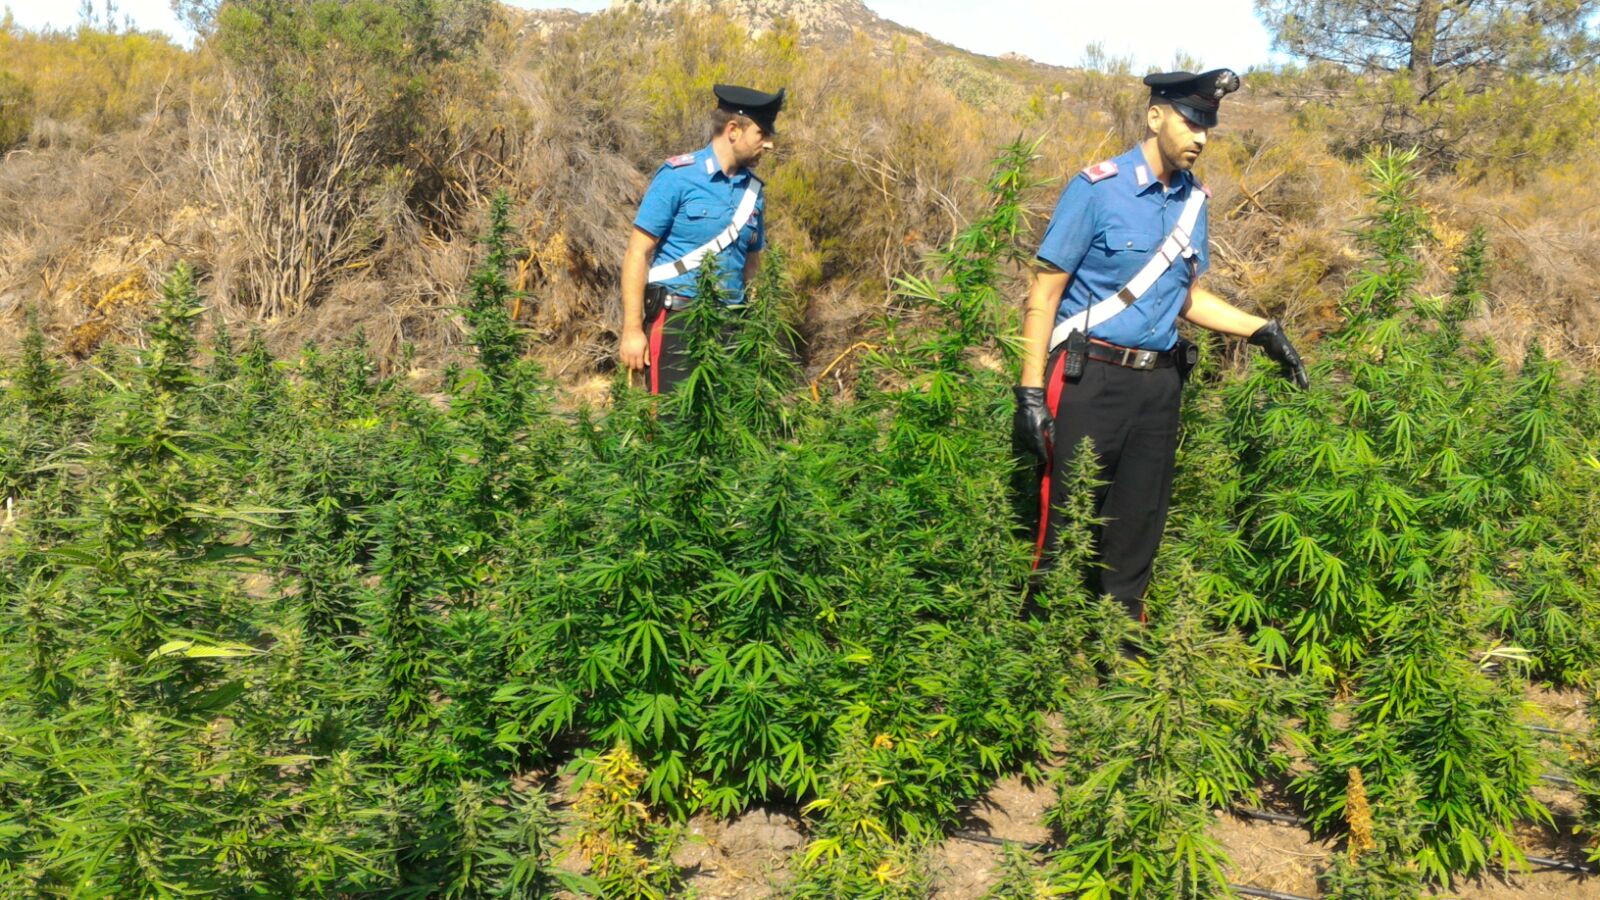 Coltiva cannabis in campagna: arrestato